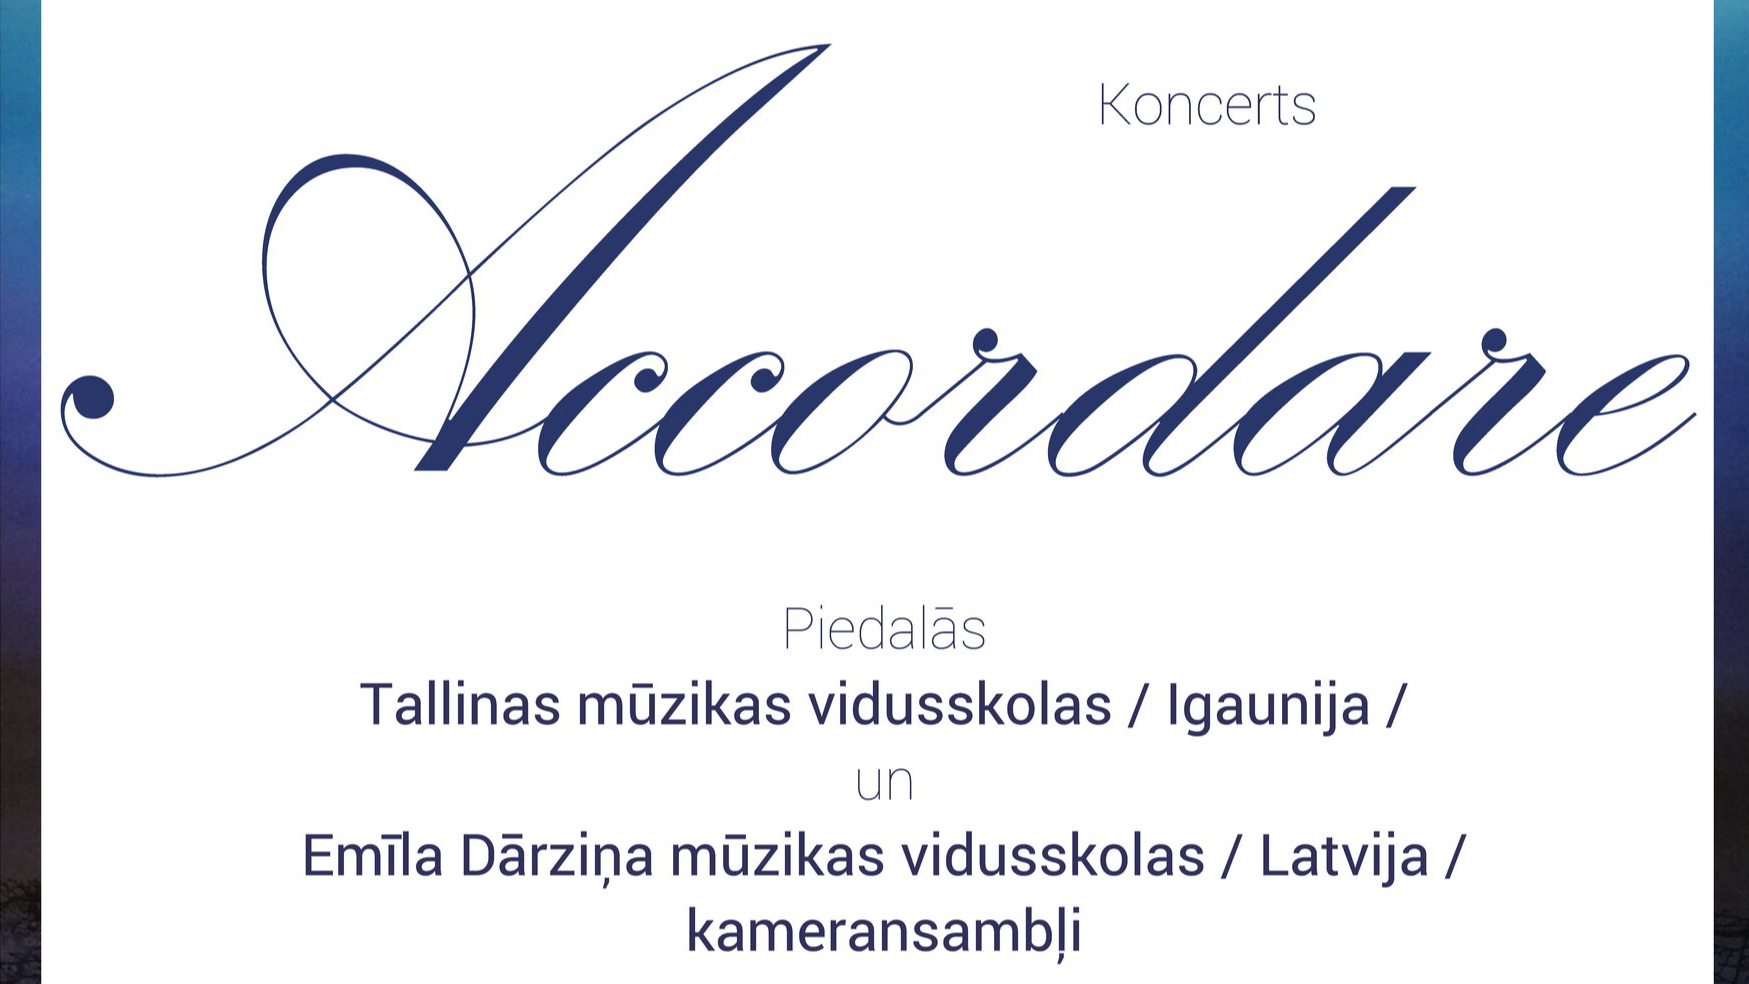 Igaunijas mēneša programmā Rīgas Latviešu biedrībā koncerts "Accordare"